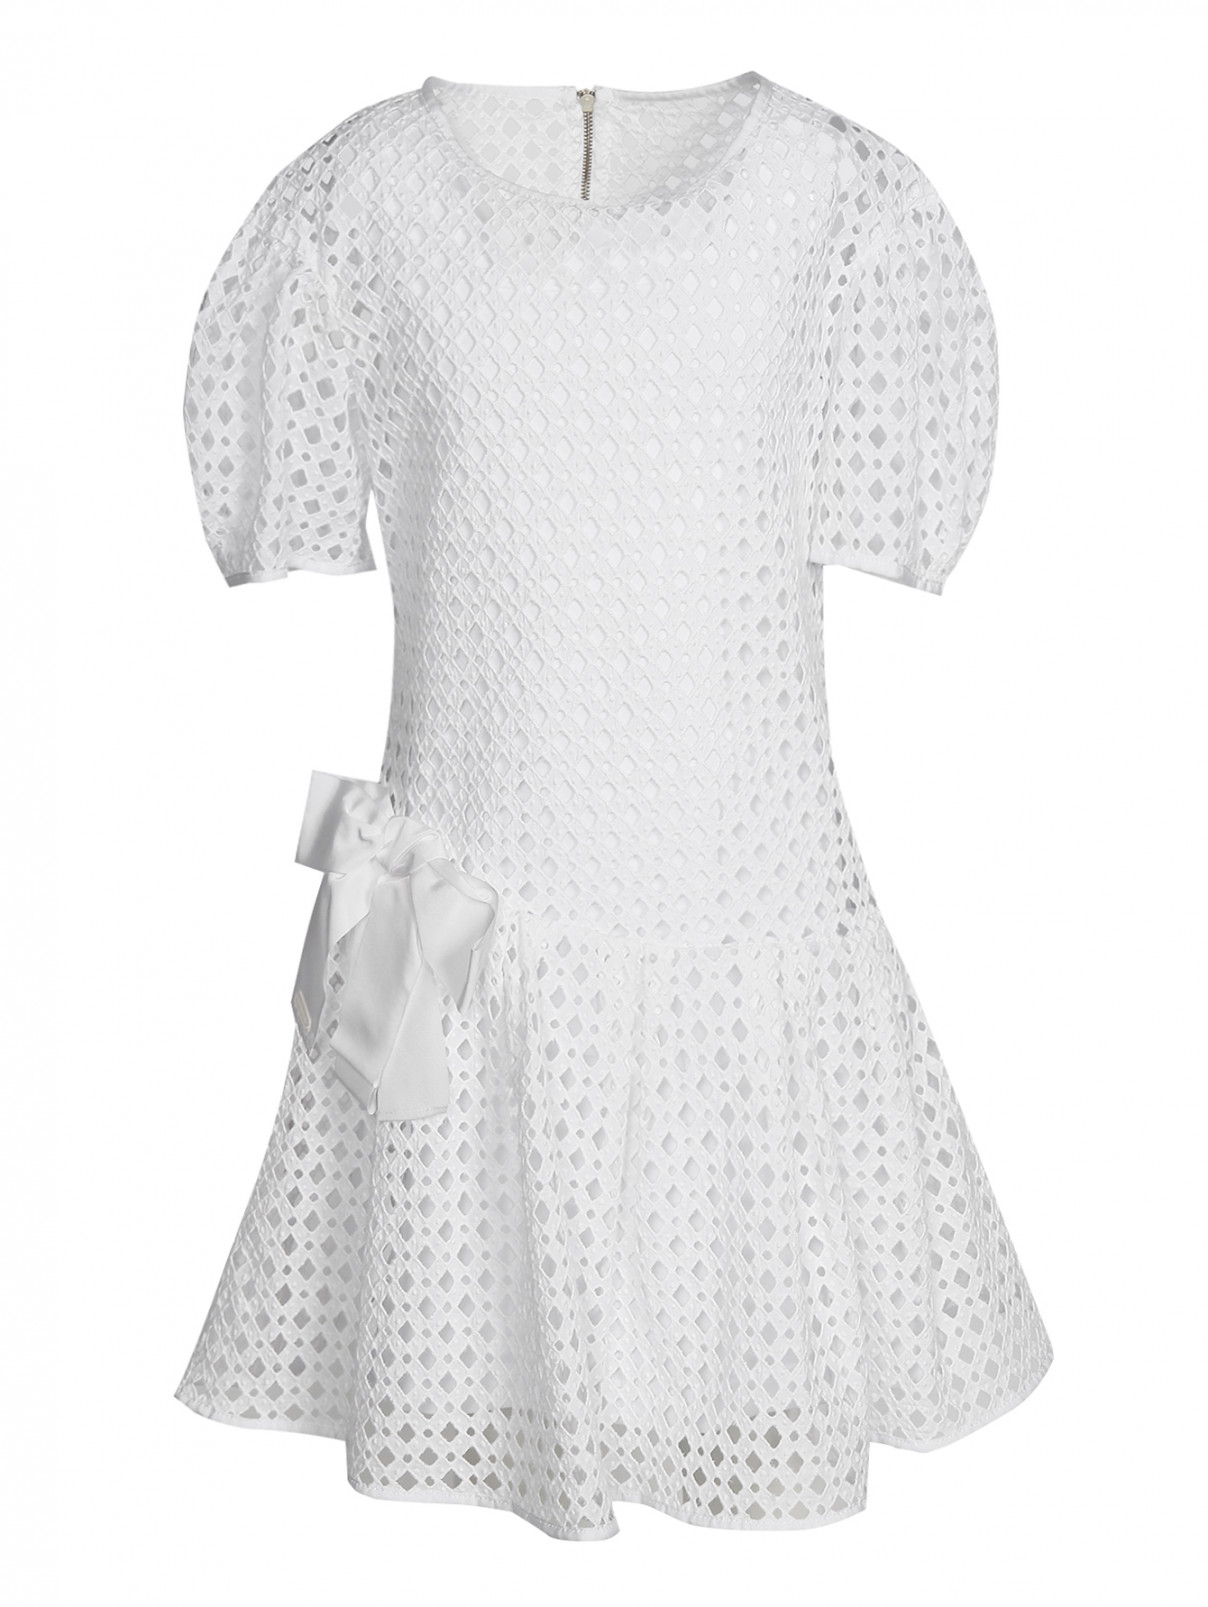 Платье из фактурного хлопка с бантиком MiMiSol  –  Общий вид  – Цвет:  Белый